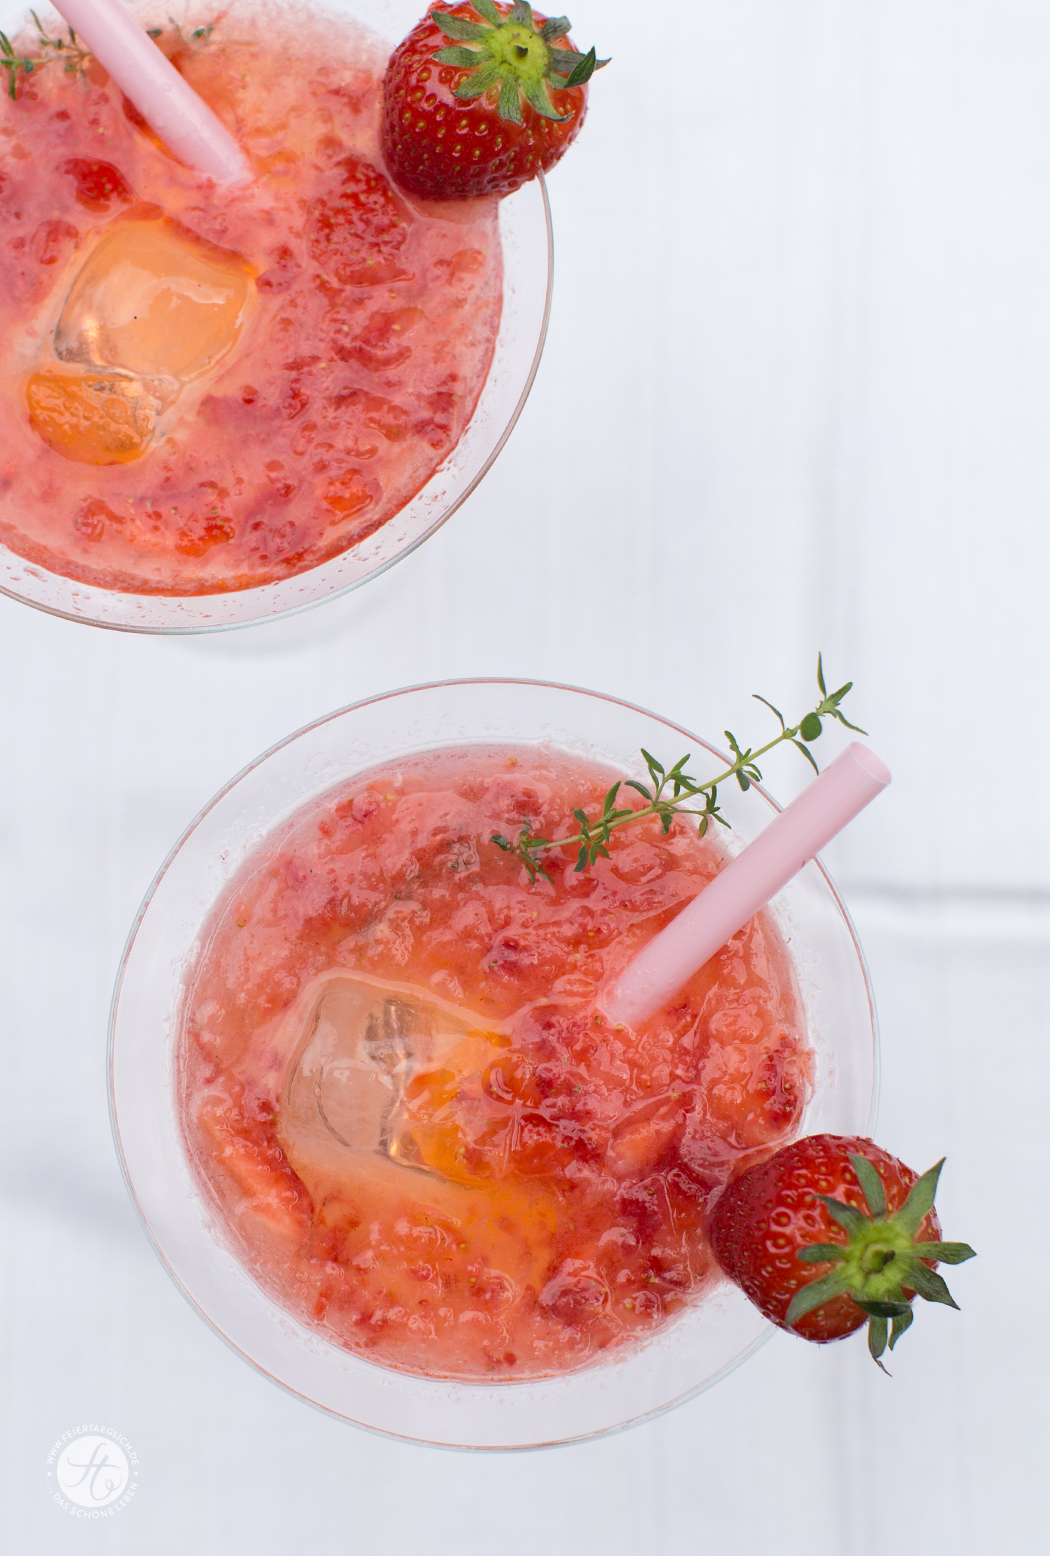 Strawberry-Moskow-Mule | Rezept von feiertäglich.de